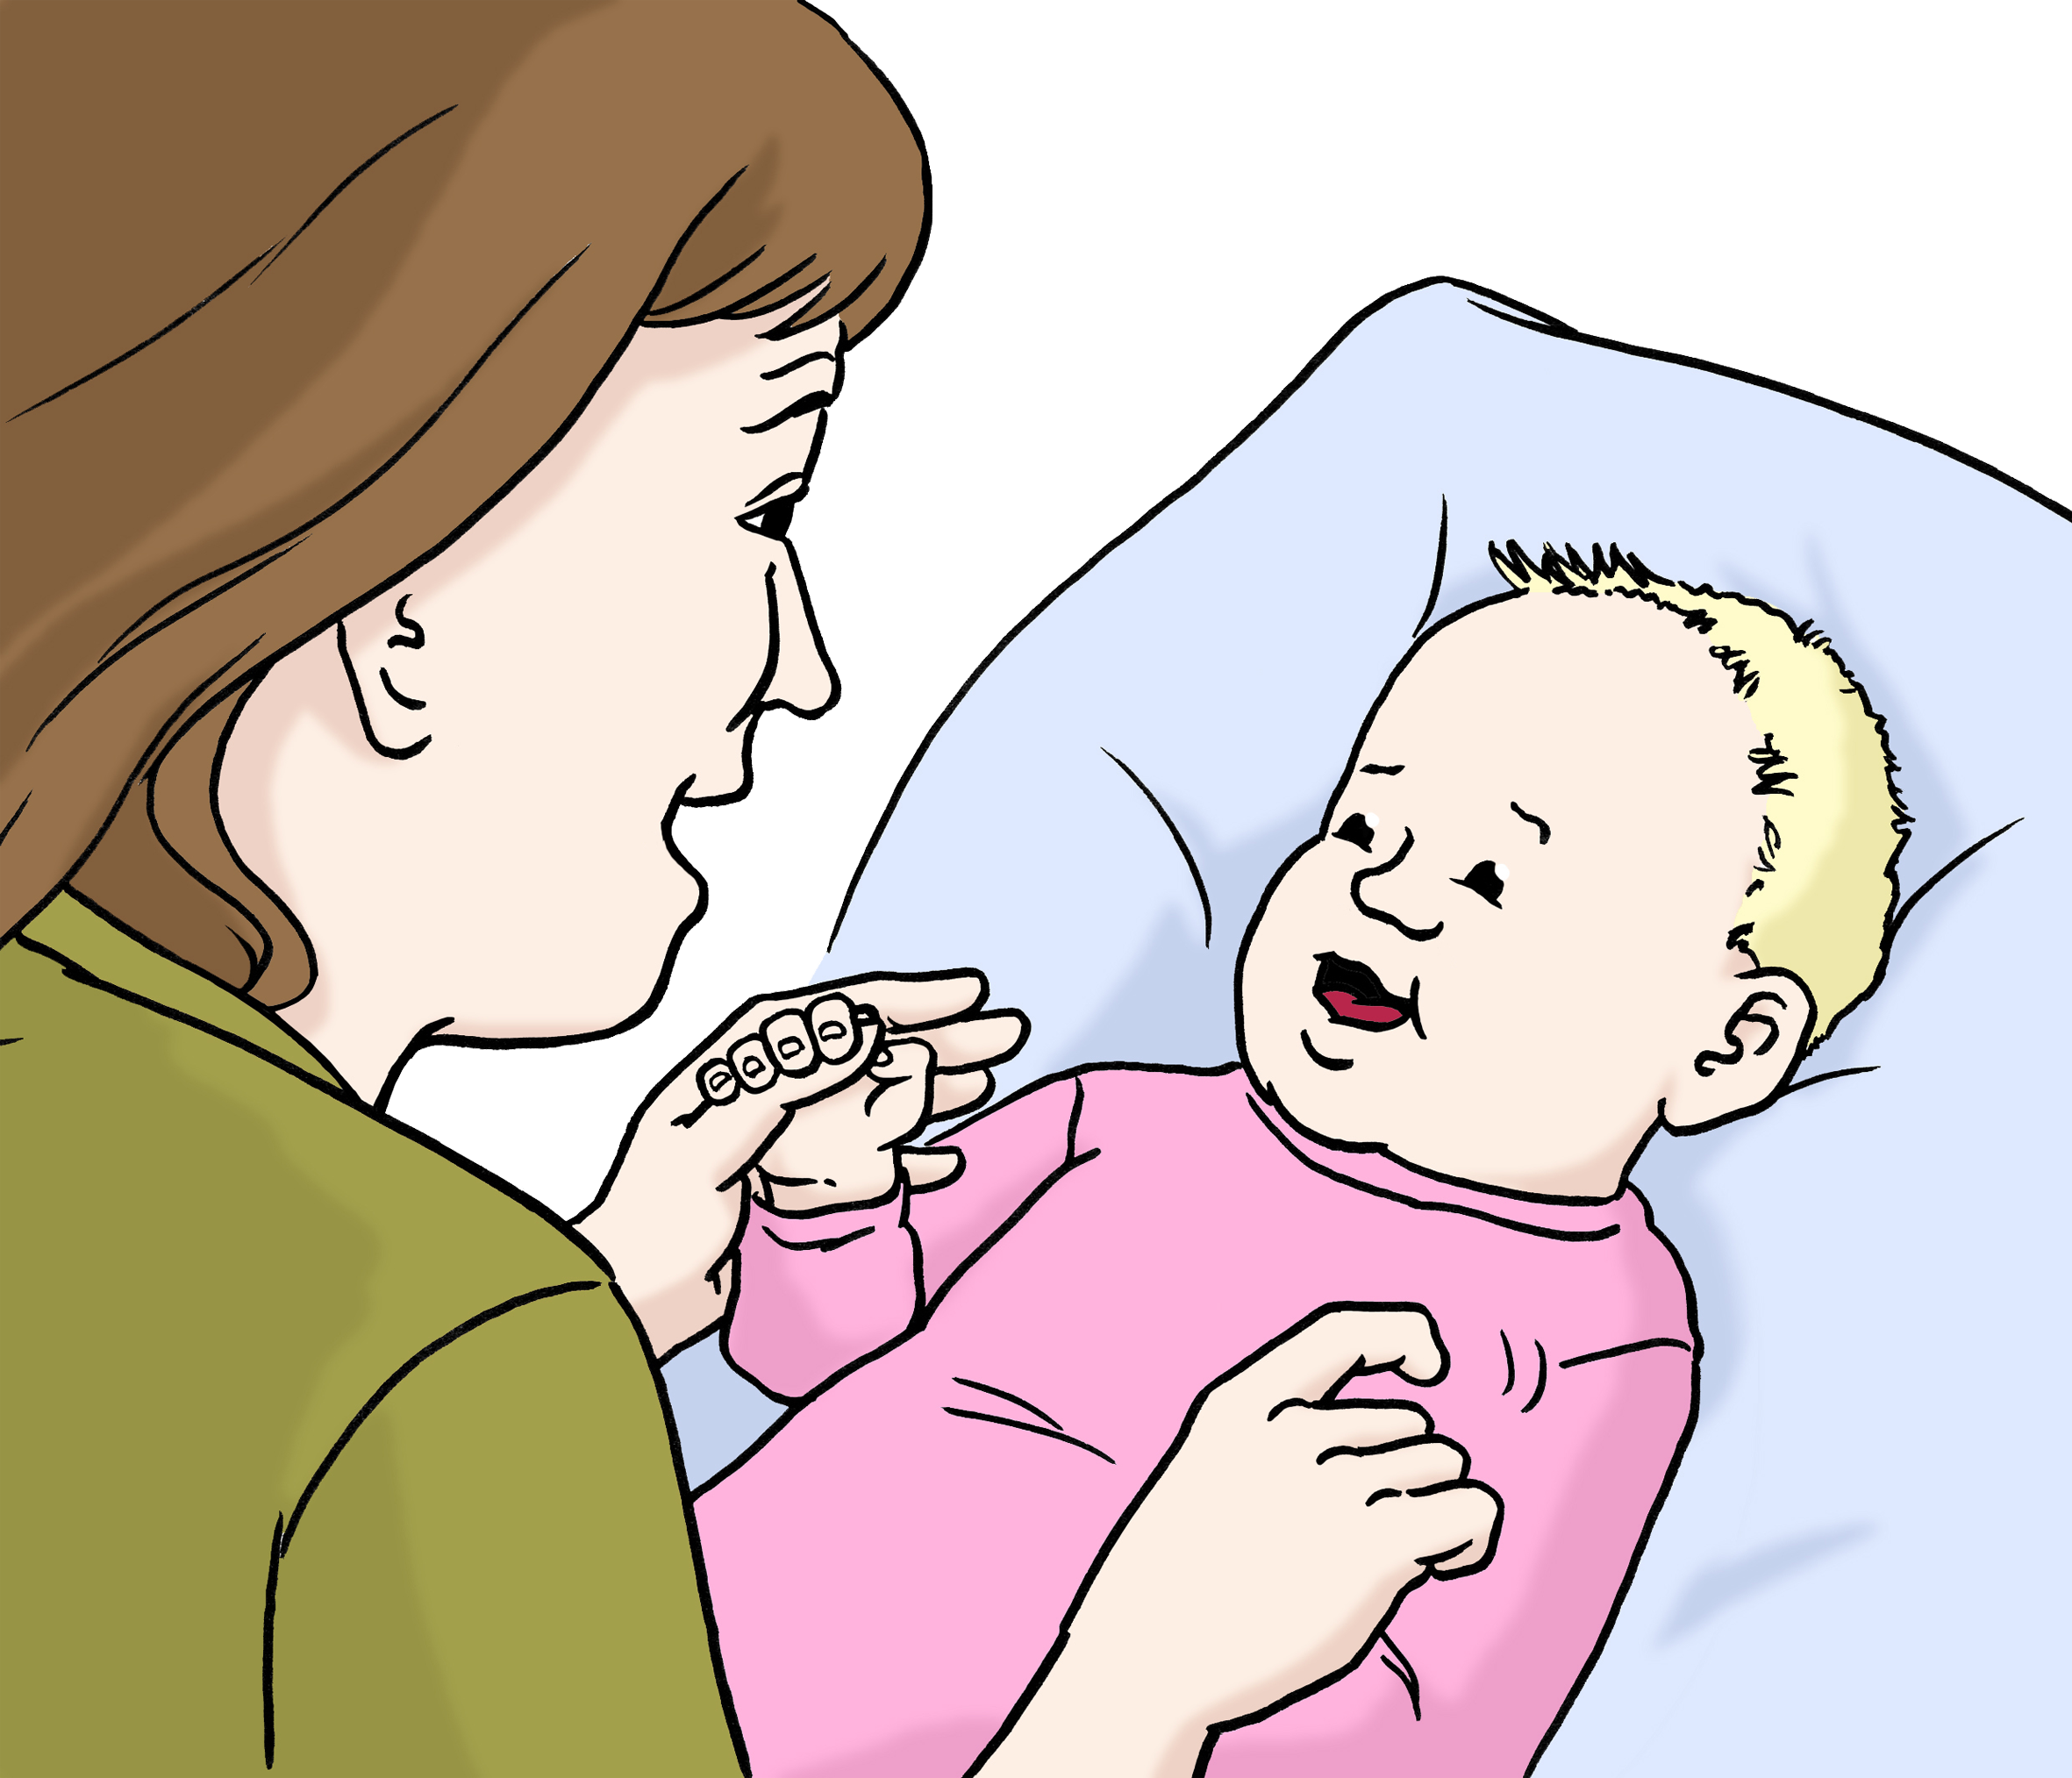 Bildbeschreibung: Eine Frau spielt mit einem Baby.